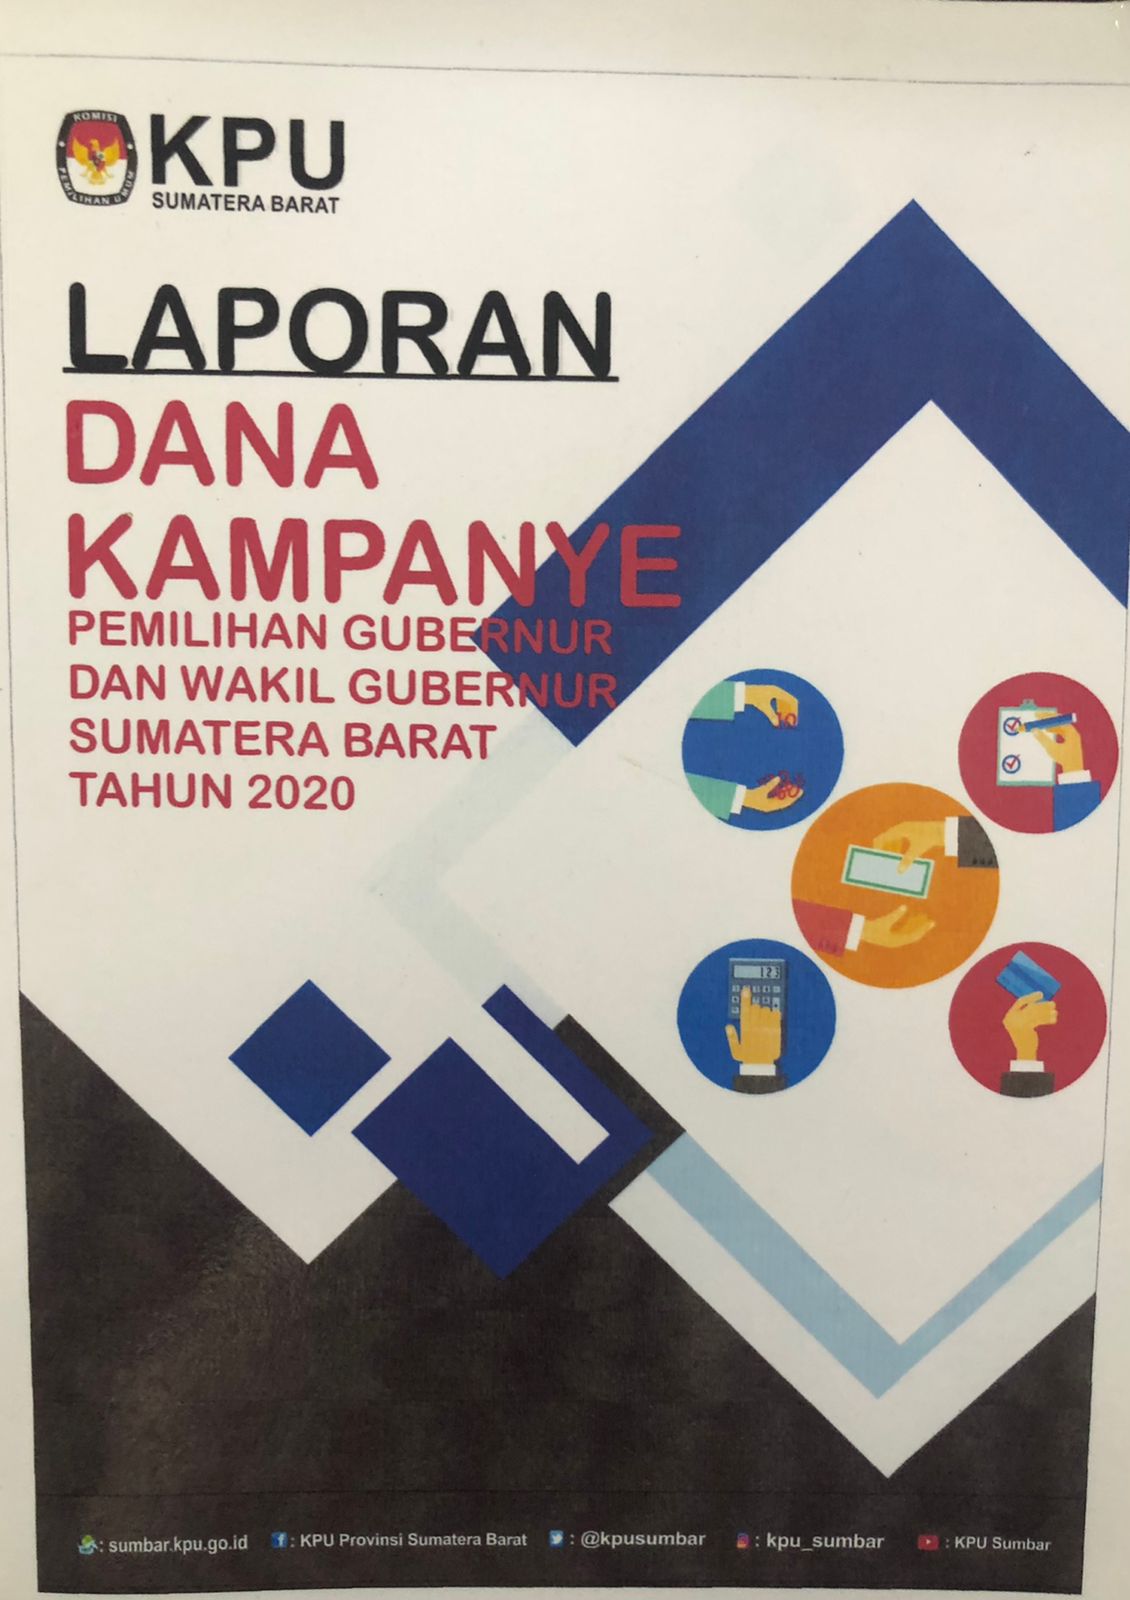 Laporan Dana Kampanye: Pemilihan Gubernur dan Wakil Gubernur Sumatera Barat Tahun 2020